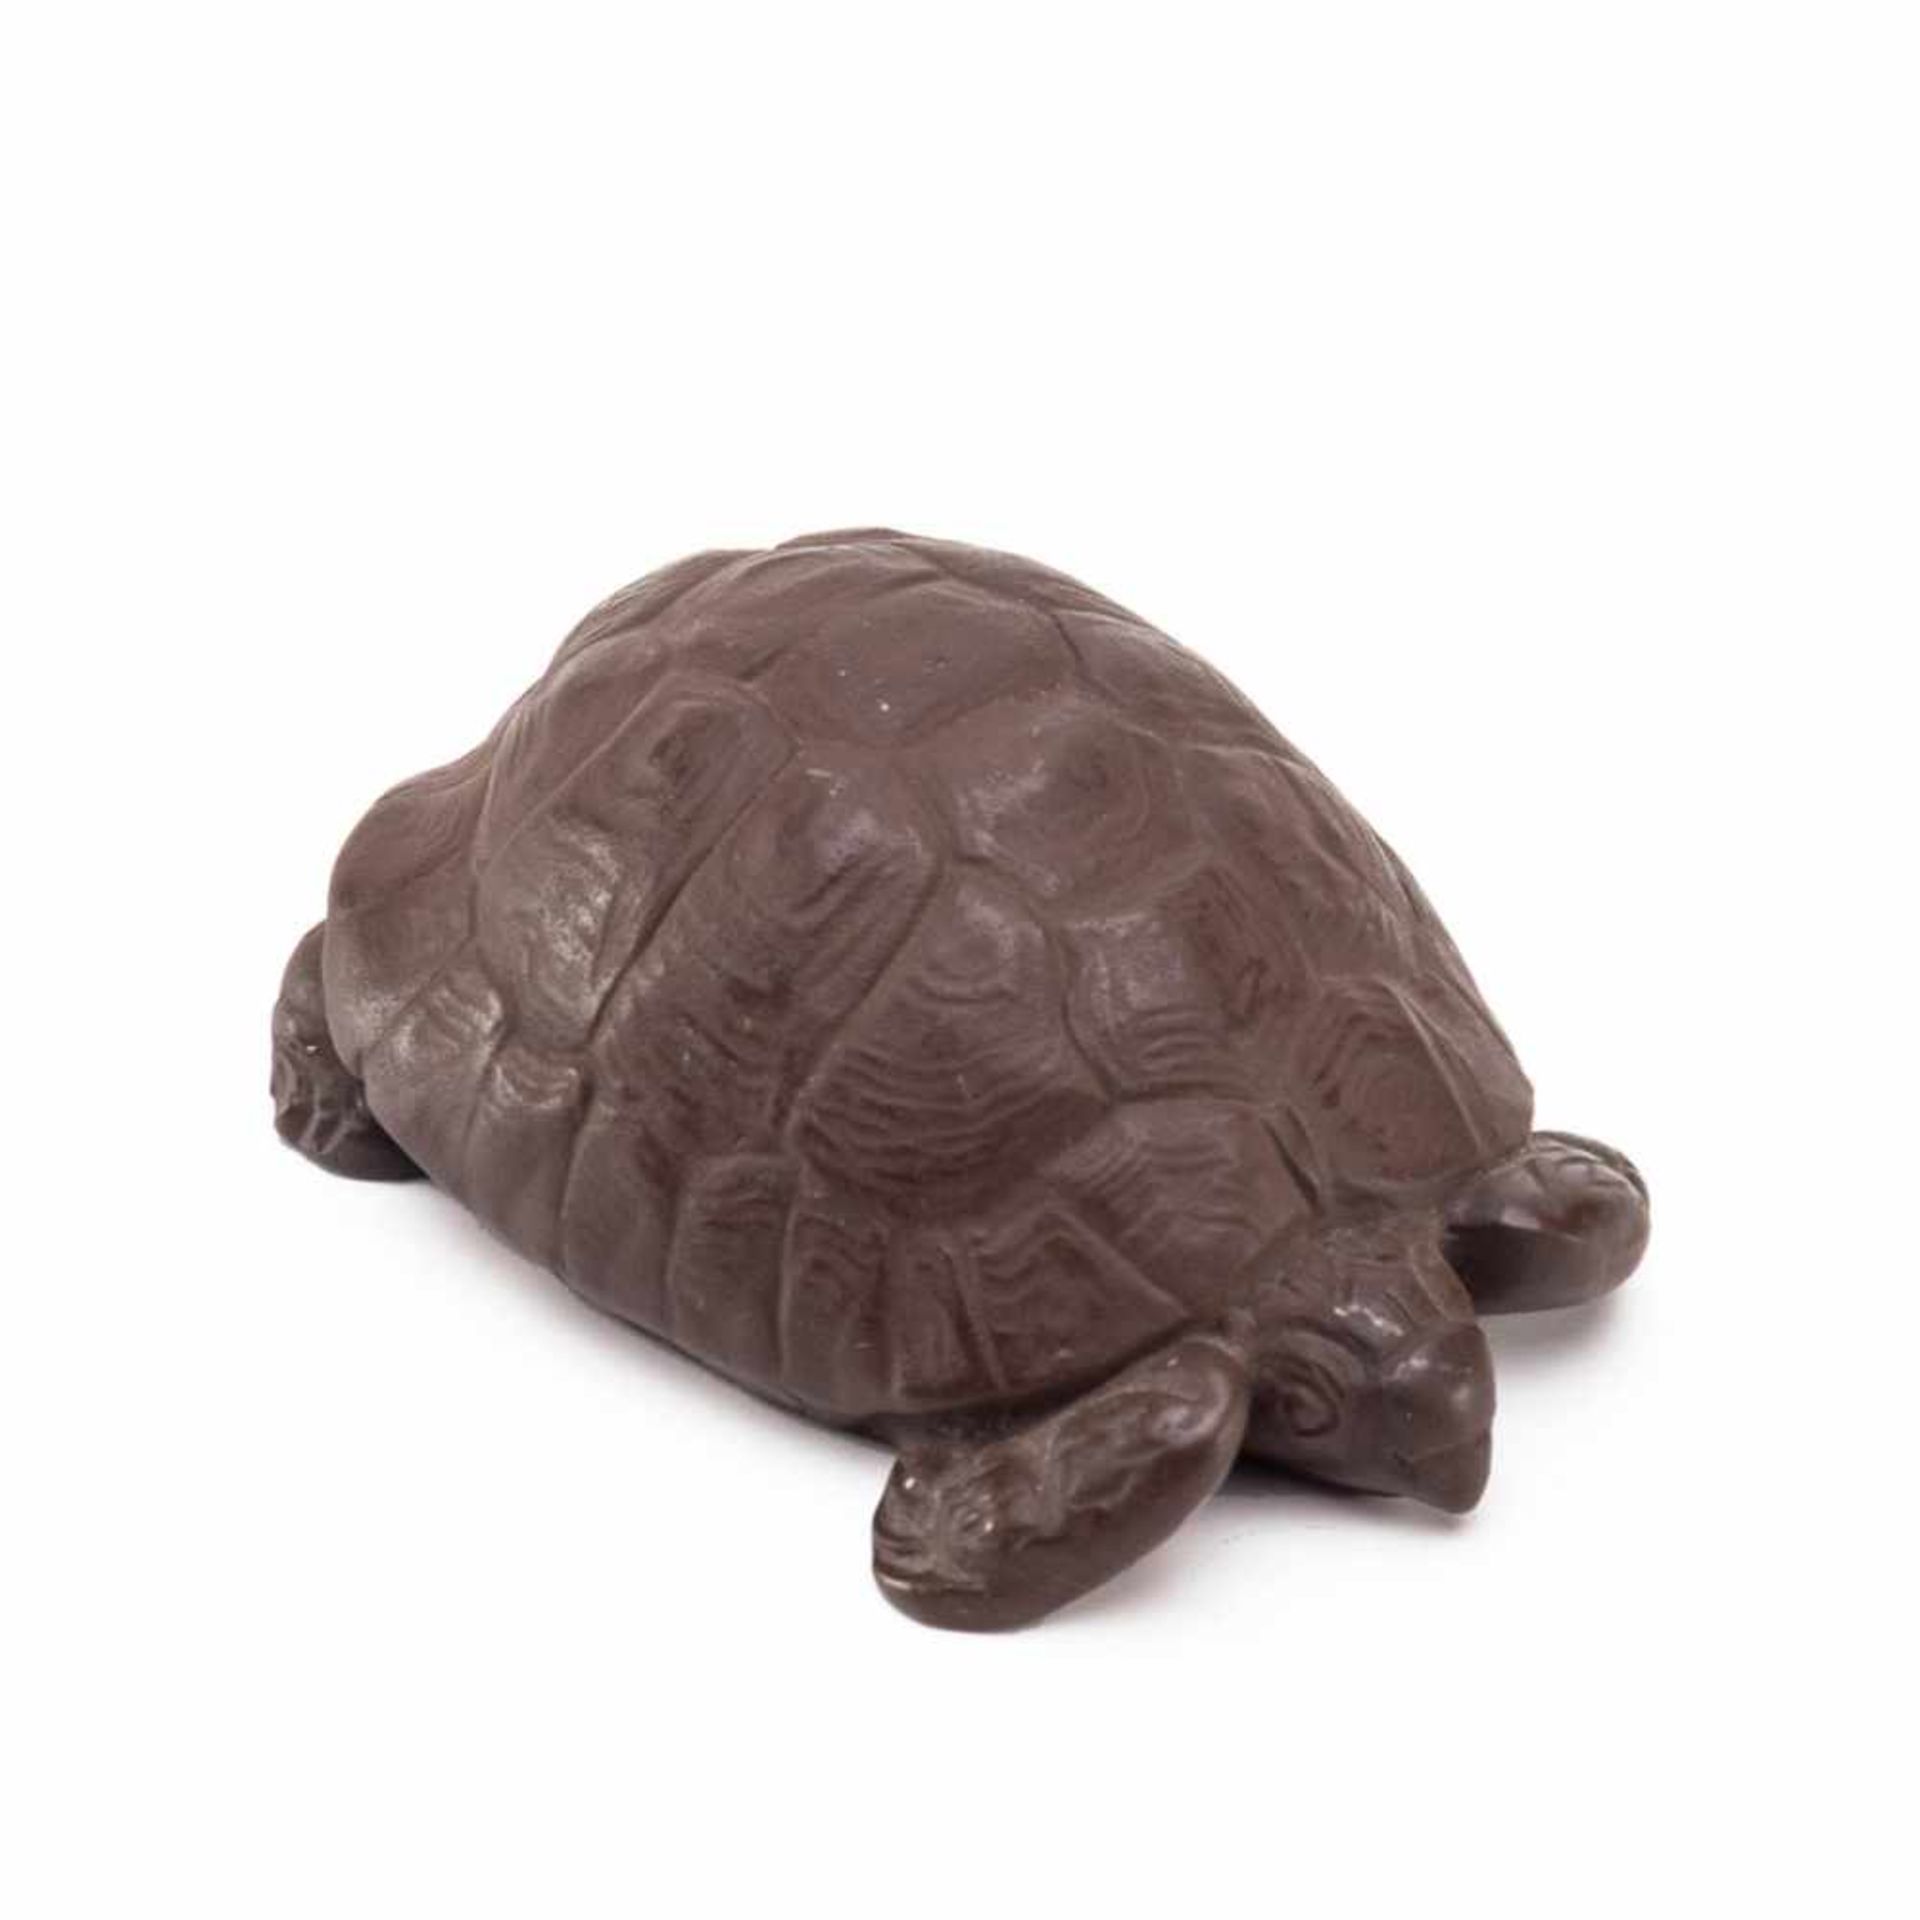 Schildkröte, Entw. Erich Oehme Böttger-Steinzeug. Vollplastische Form einer Schildkröte, unter dem